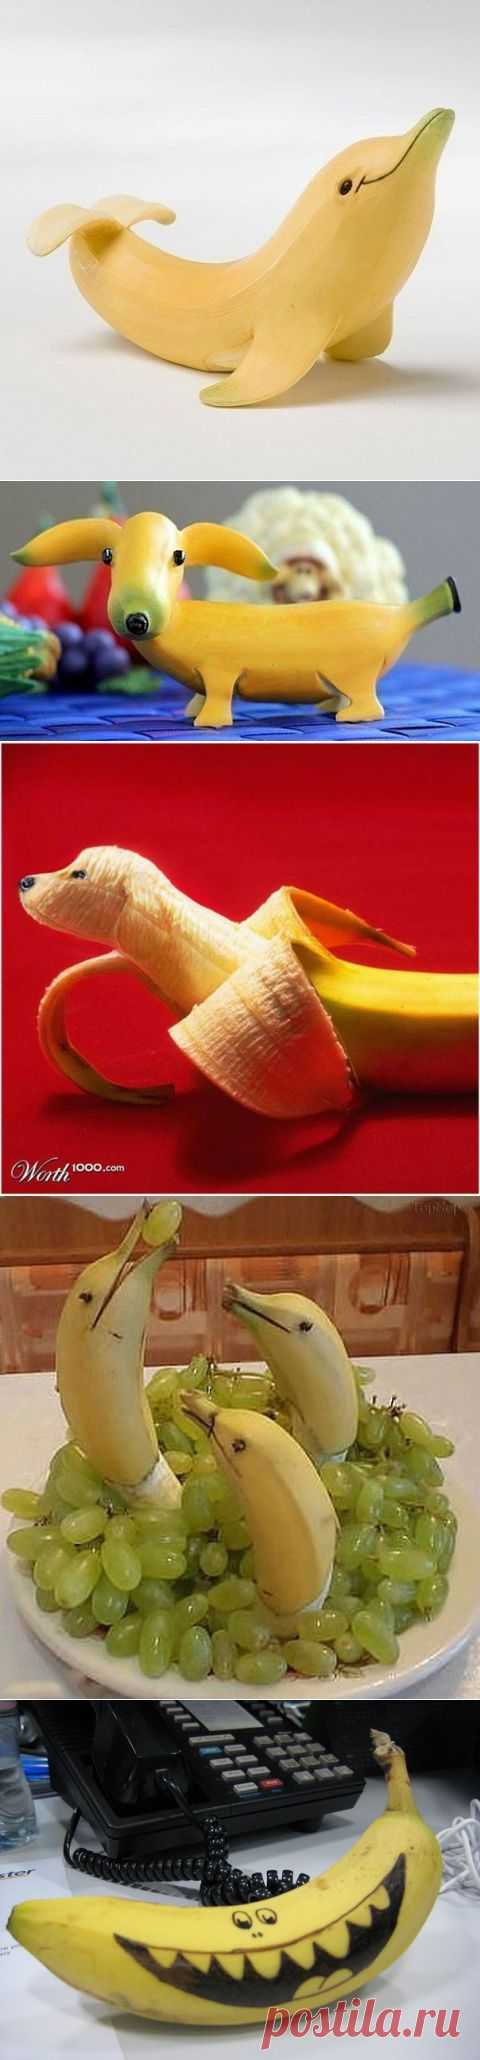 Банановые фантазии...